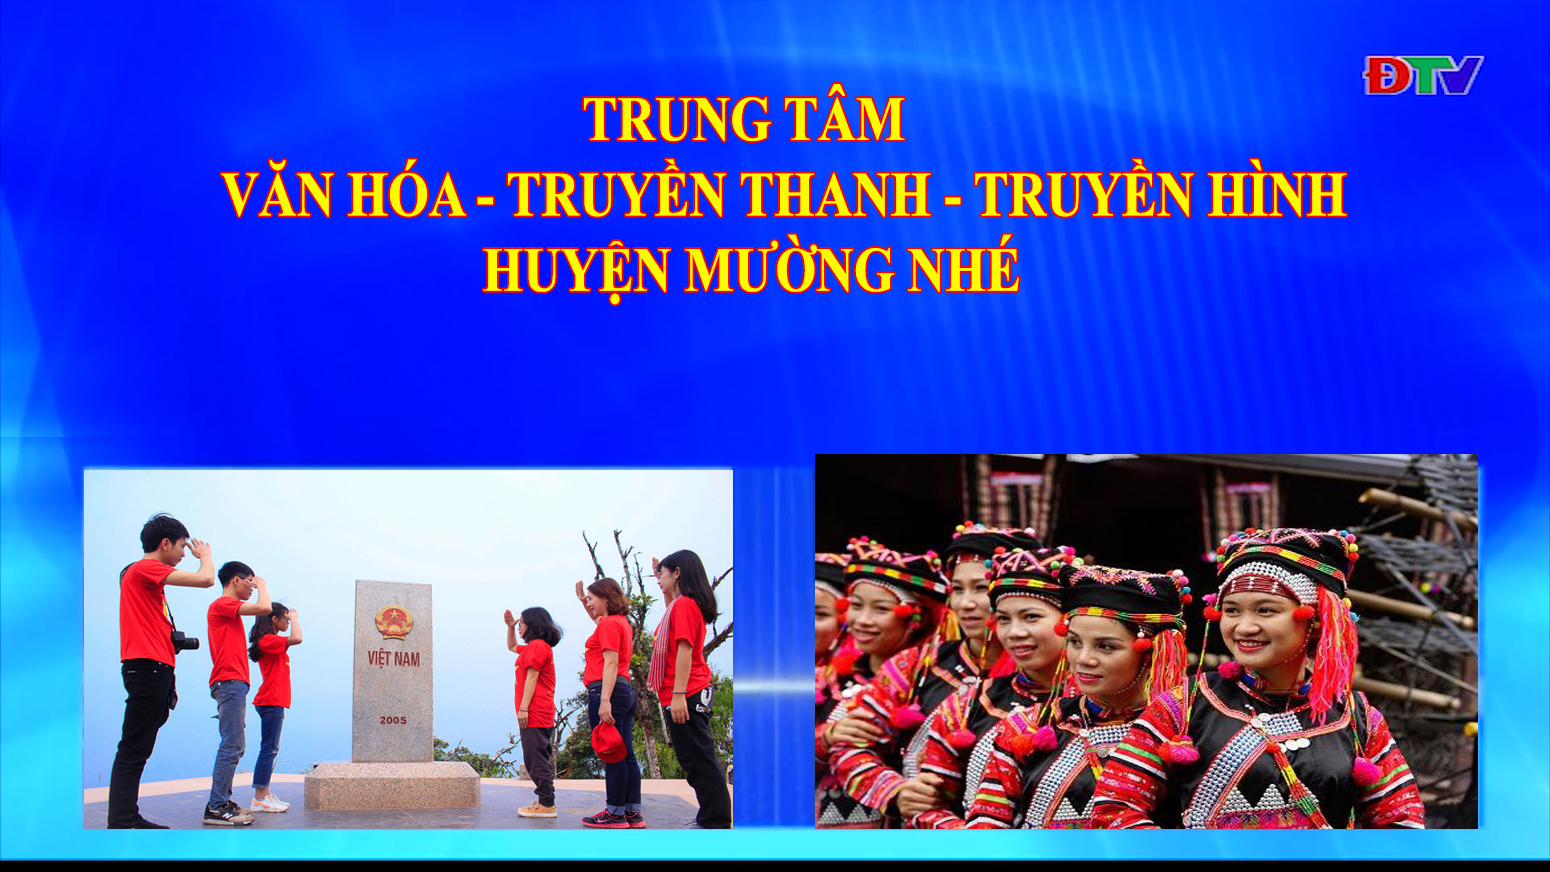 Trung tâm Văn hóa Truyền thanh Truyền hình huyện Mường Nhé (Ngày 9-7-2020)